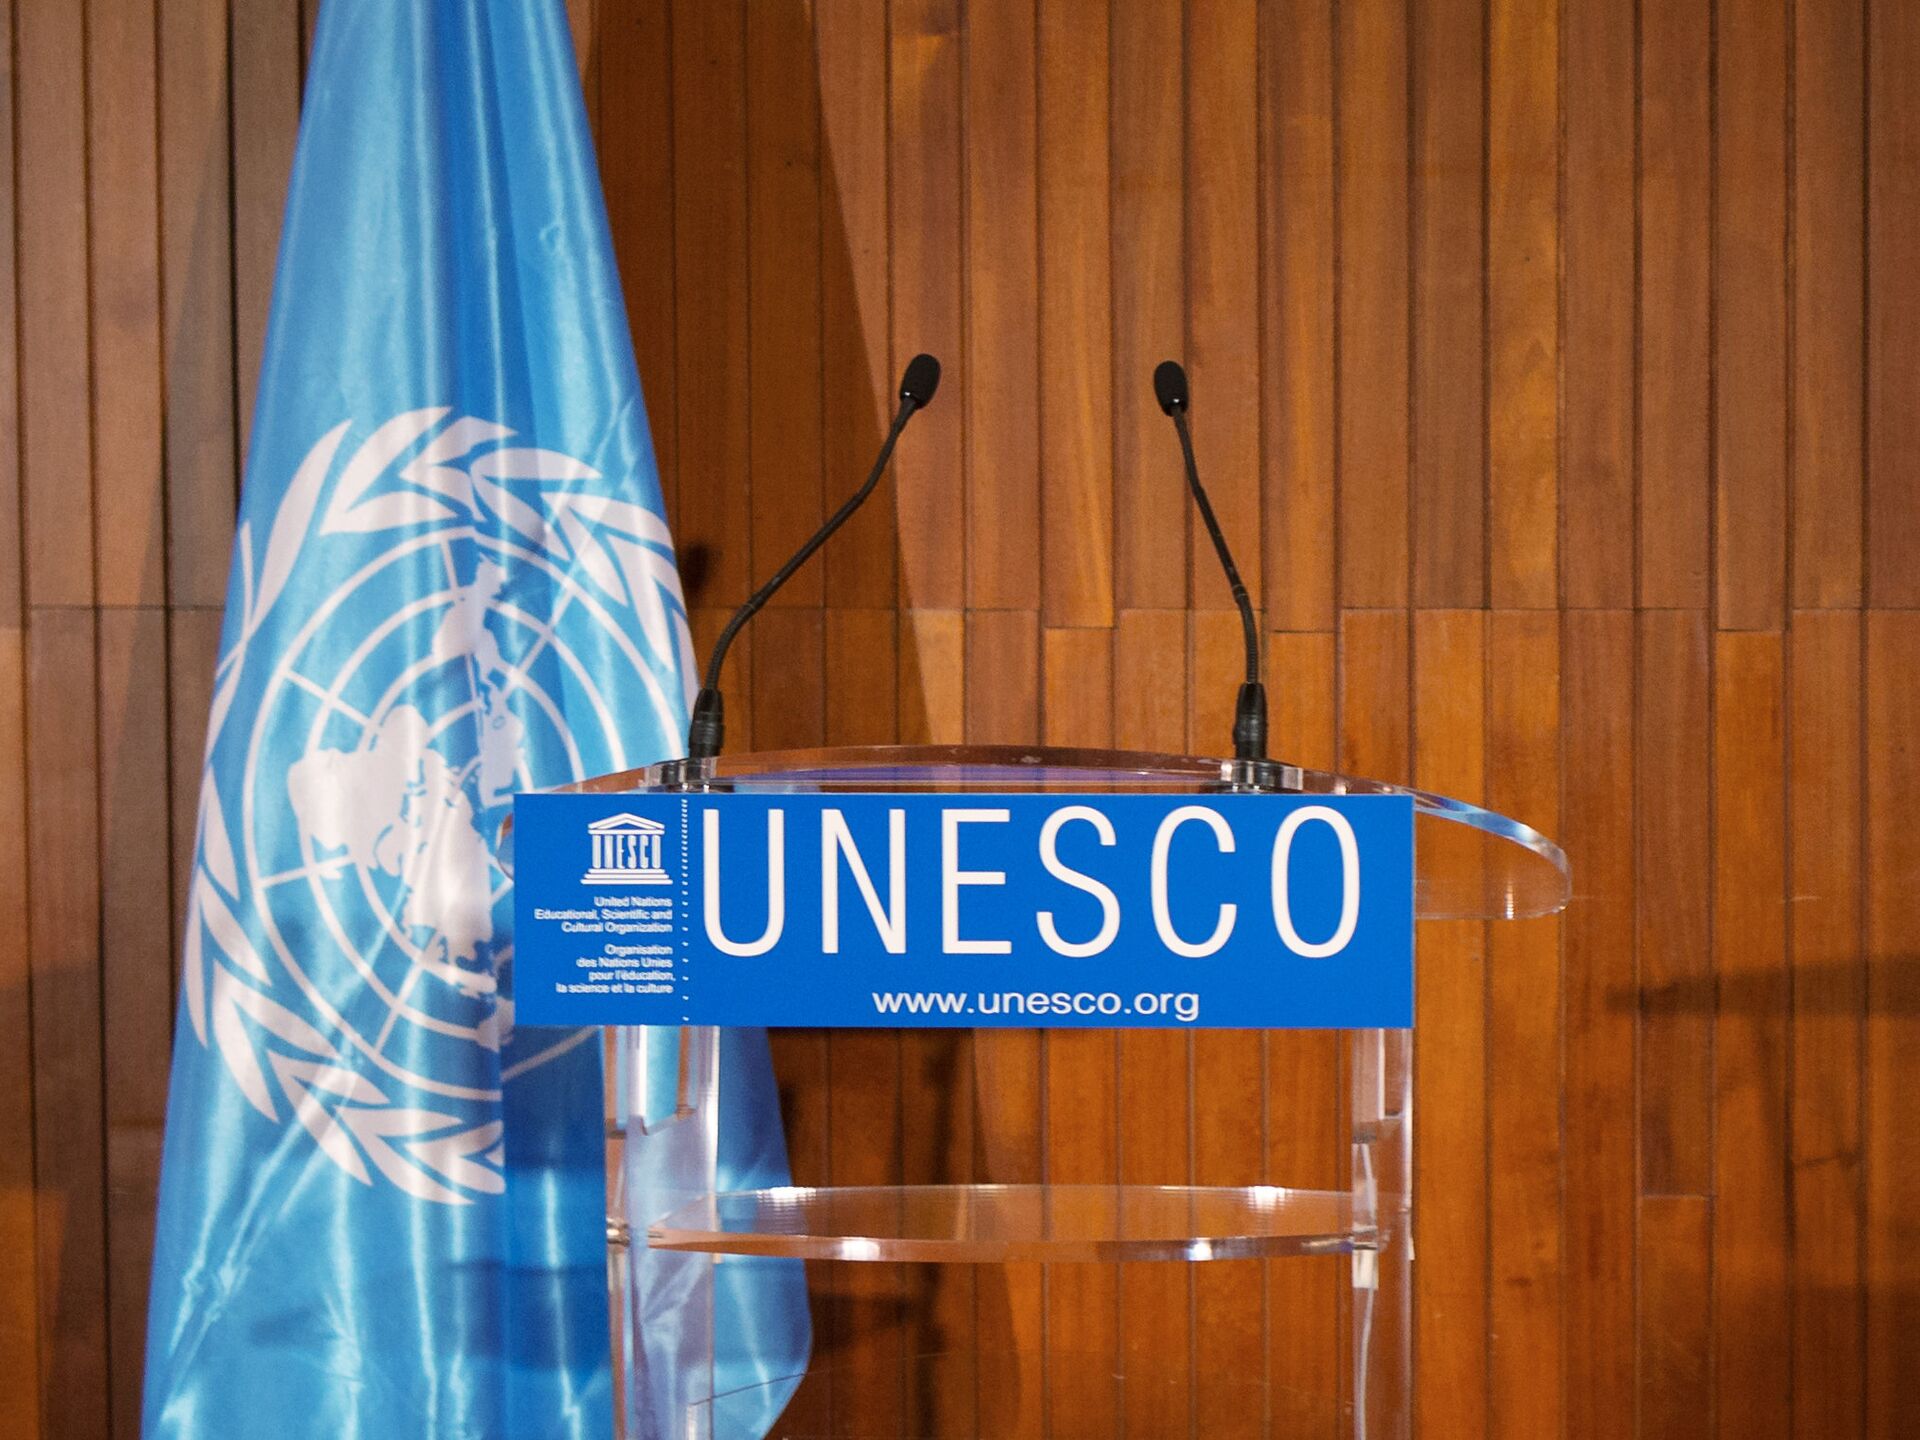 Unesco org. ООН ЮНЕСКО. Штаб ЮНЕСКО. Флаг ЮНЕСКО. ЮНЕСКО Международная организация.